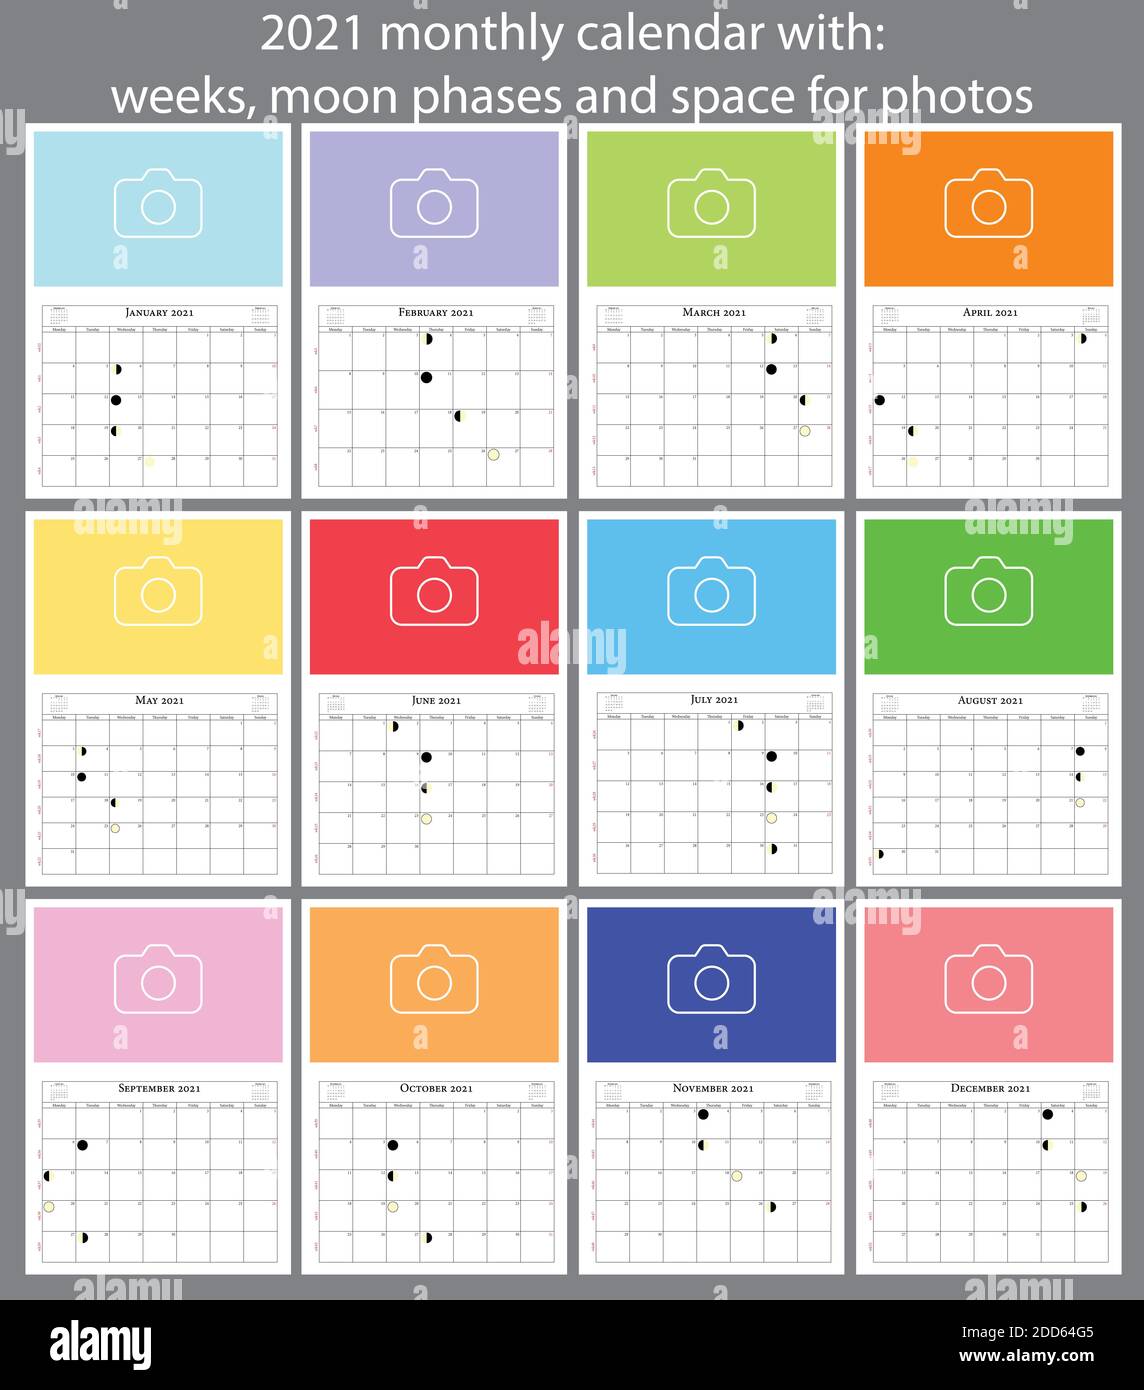 calendario di 2021 mesi con settimane, fasi lunari e spazio per le foto Foto Stock